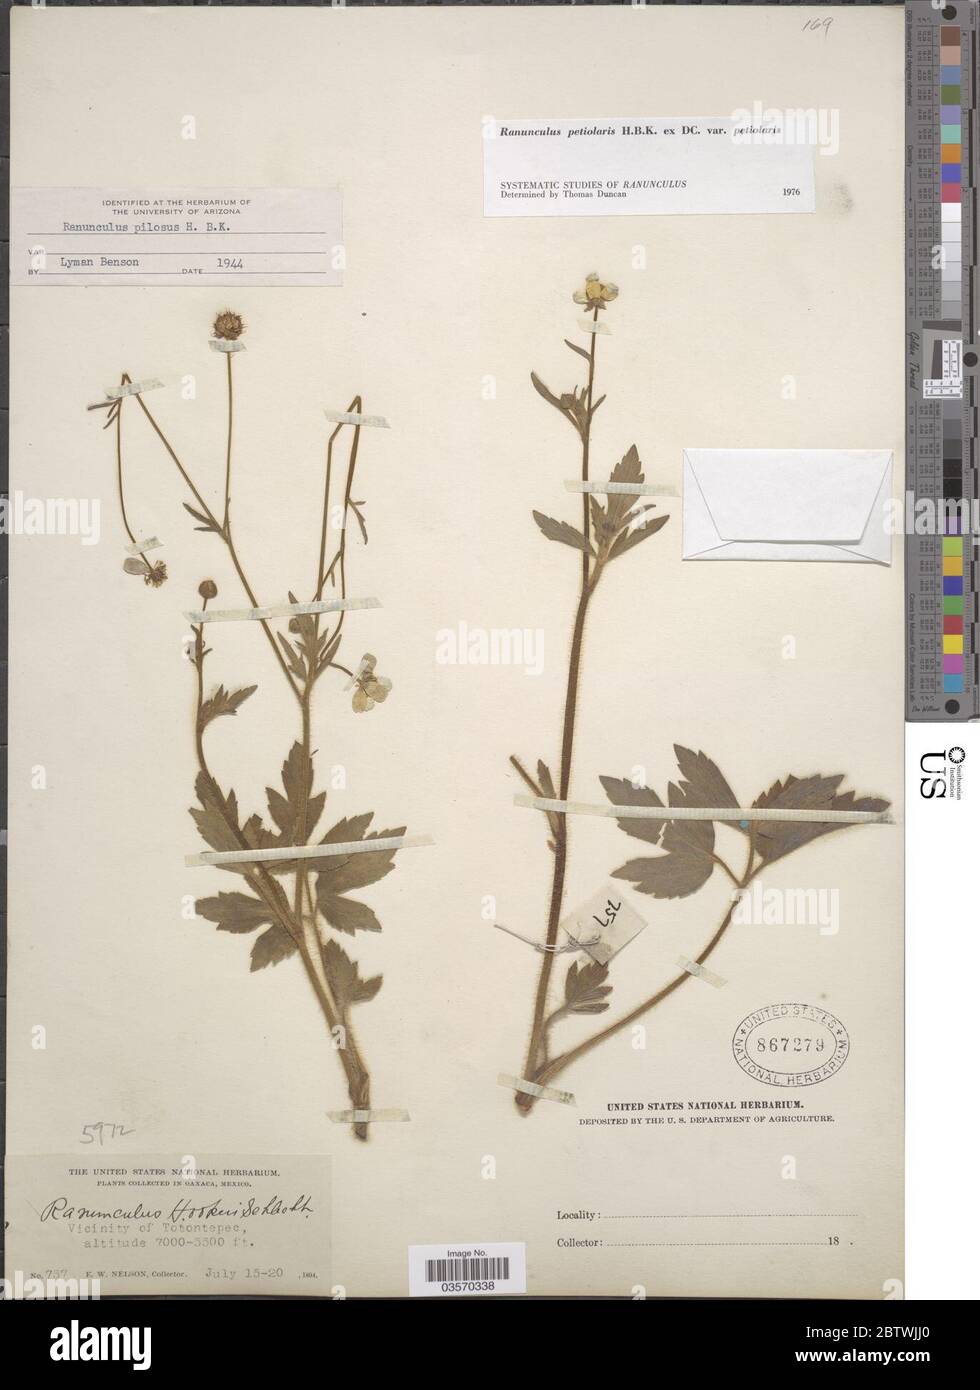 Ranunculus petiolaris Kunth ex DC var petiolaris. Stock Photo